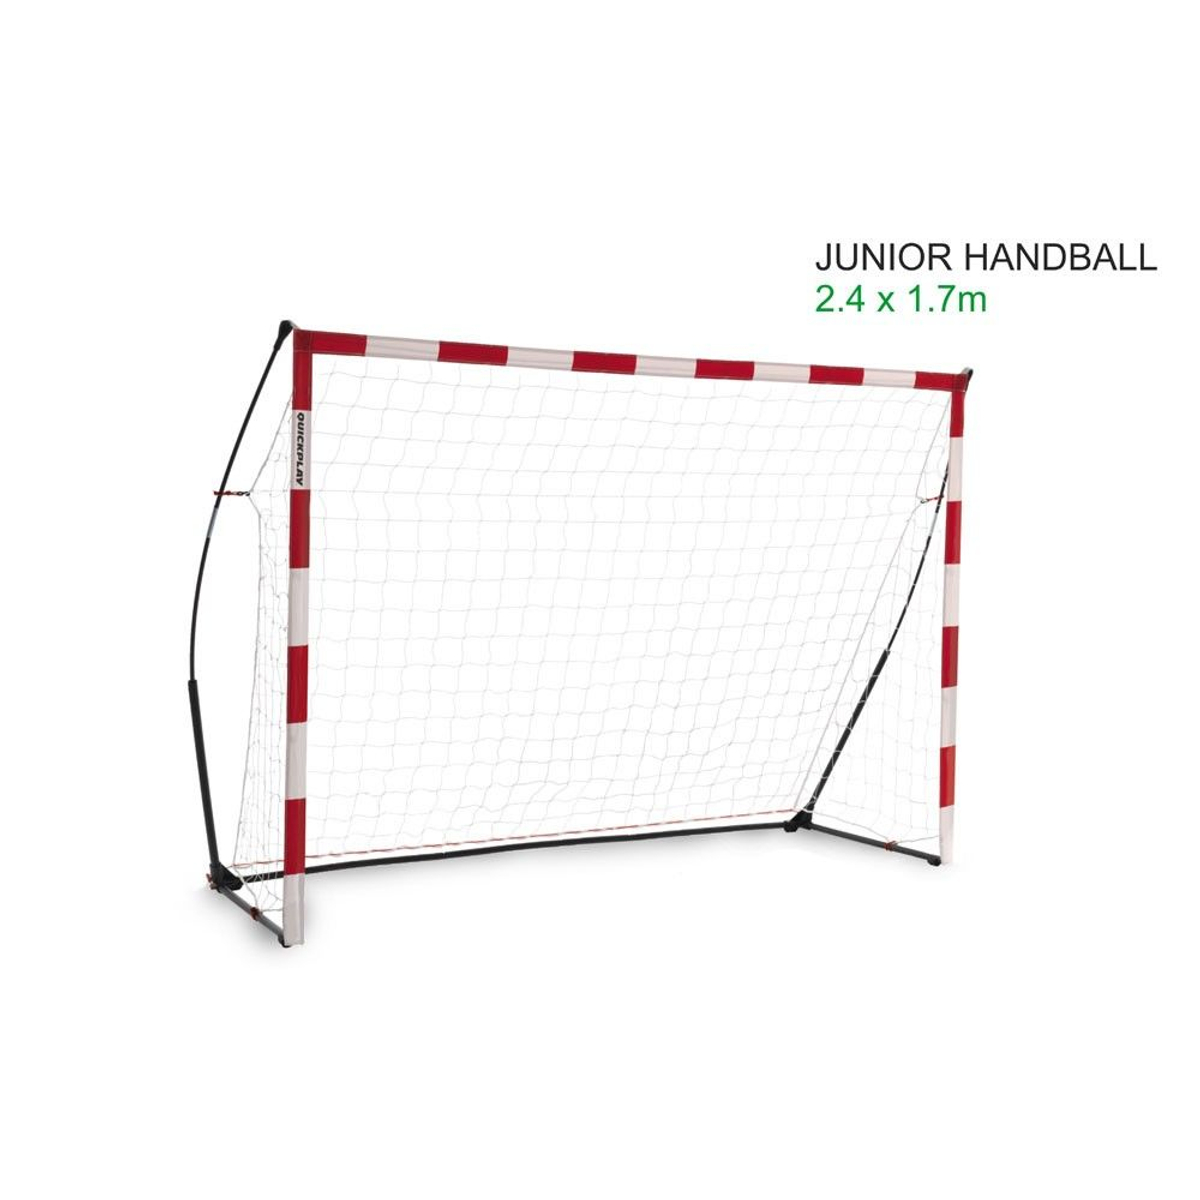 Quickplay Handball Goal Junior